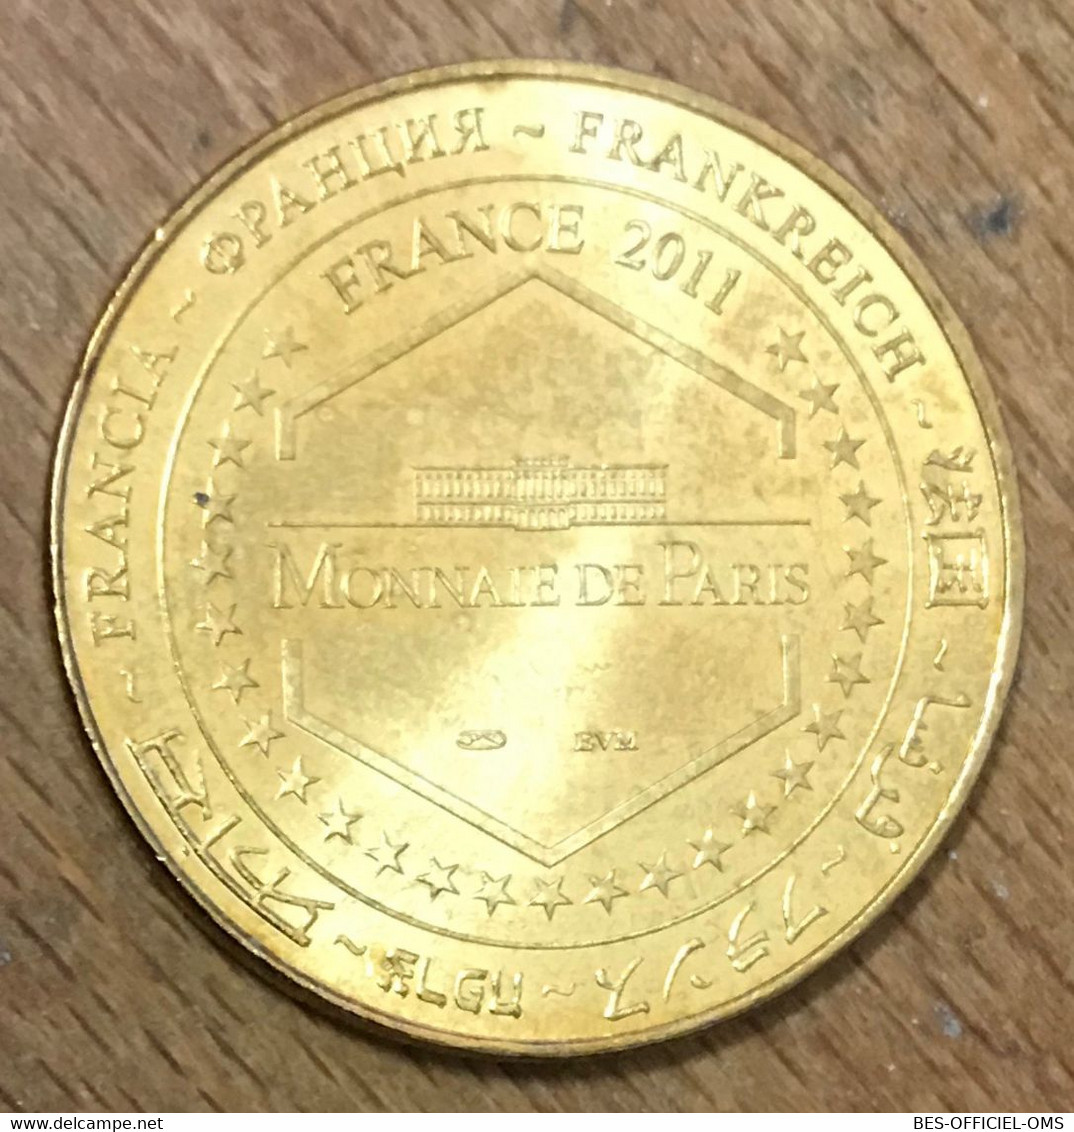 74 CHAMONIX MONT-BLANC MONTENVERS 2011 MÉDAILLE MONNAIE DE PARIS JETON TOURISTIQUE MEDALS COINS TOKENS - 2011